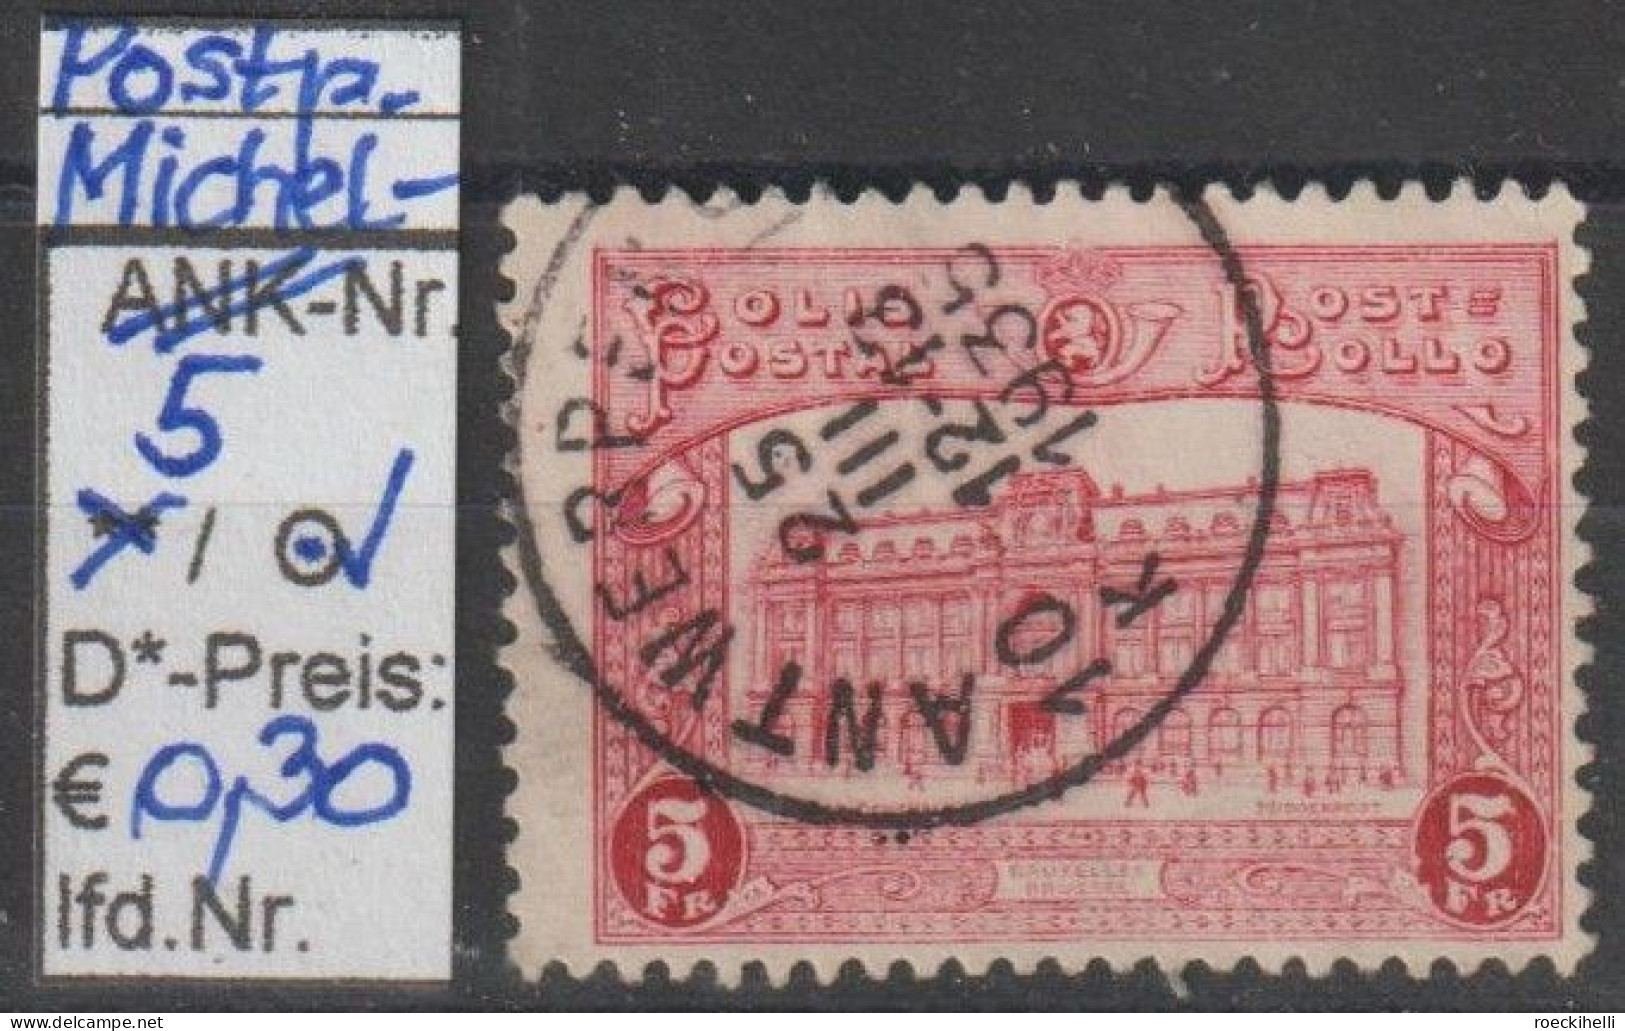 1929 - BELGIEN - Post-PM (COLIS) "Hauptpostamt Brüssel" 5 Fr Karmin  - O Gestempelt - S.Scan (Post-PM 5o Be) - Reisgoedzegels [BA]